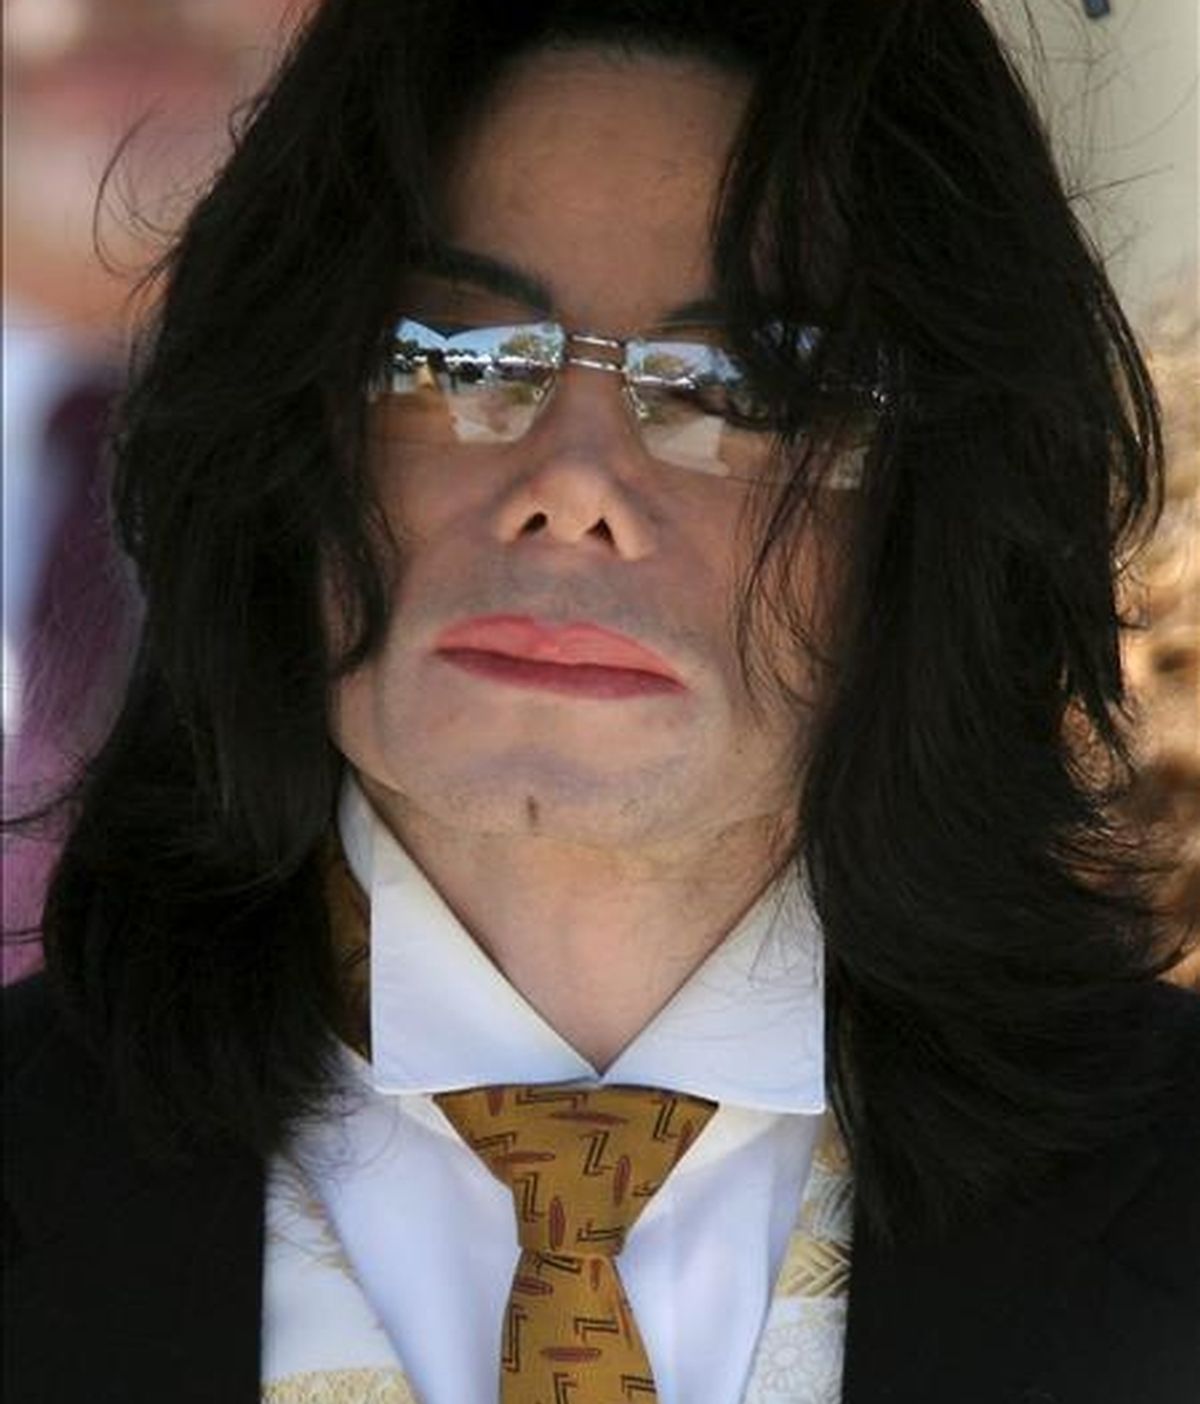 Mocienne Petit Jackson solicitó ante la Corte Superior del condado de Los Ángeles que se le realice una prueba de ADN para probar que su padre fue Michael Jackson (en la imagen), informó la página web TMZ. EFE/Archivo